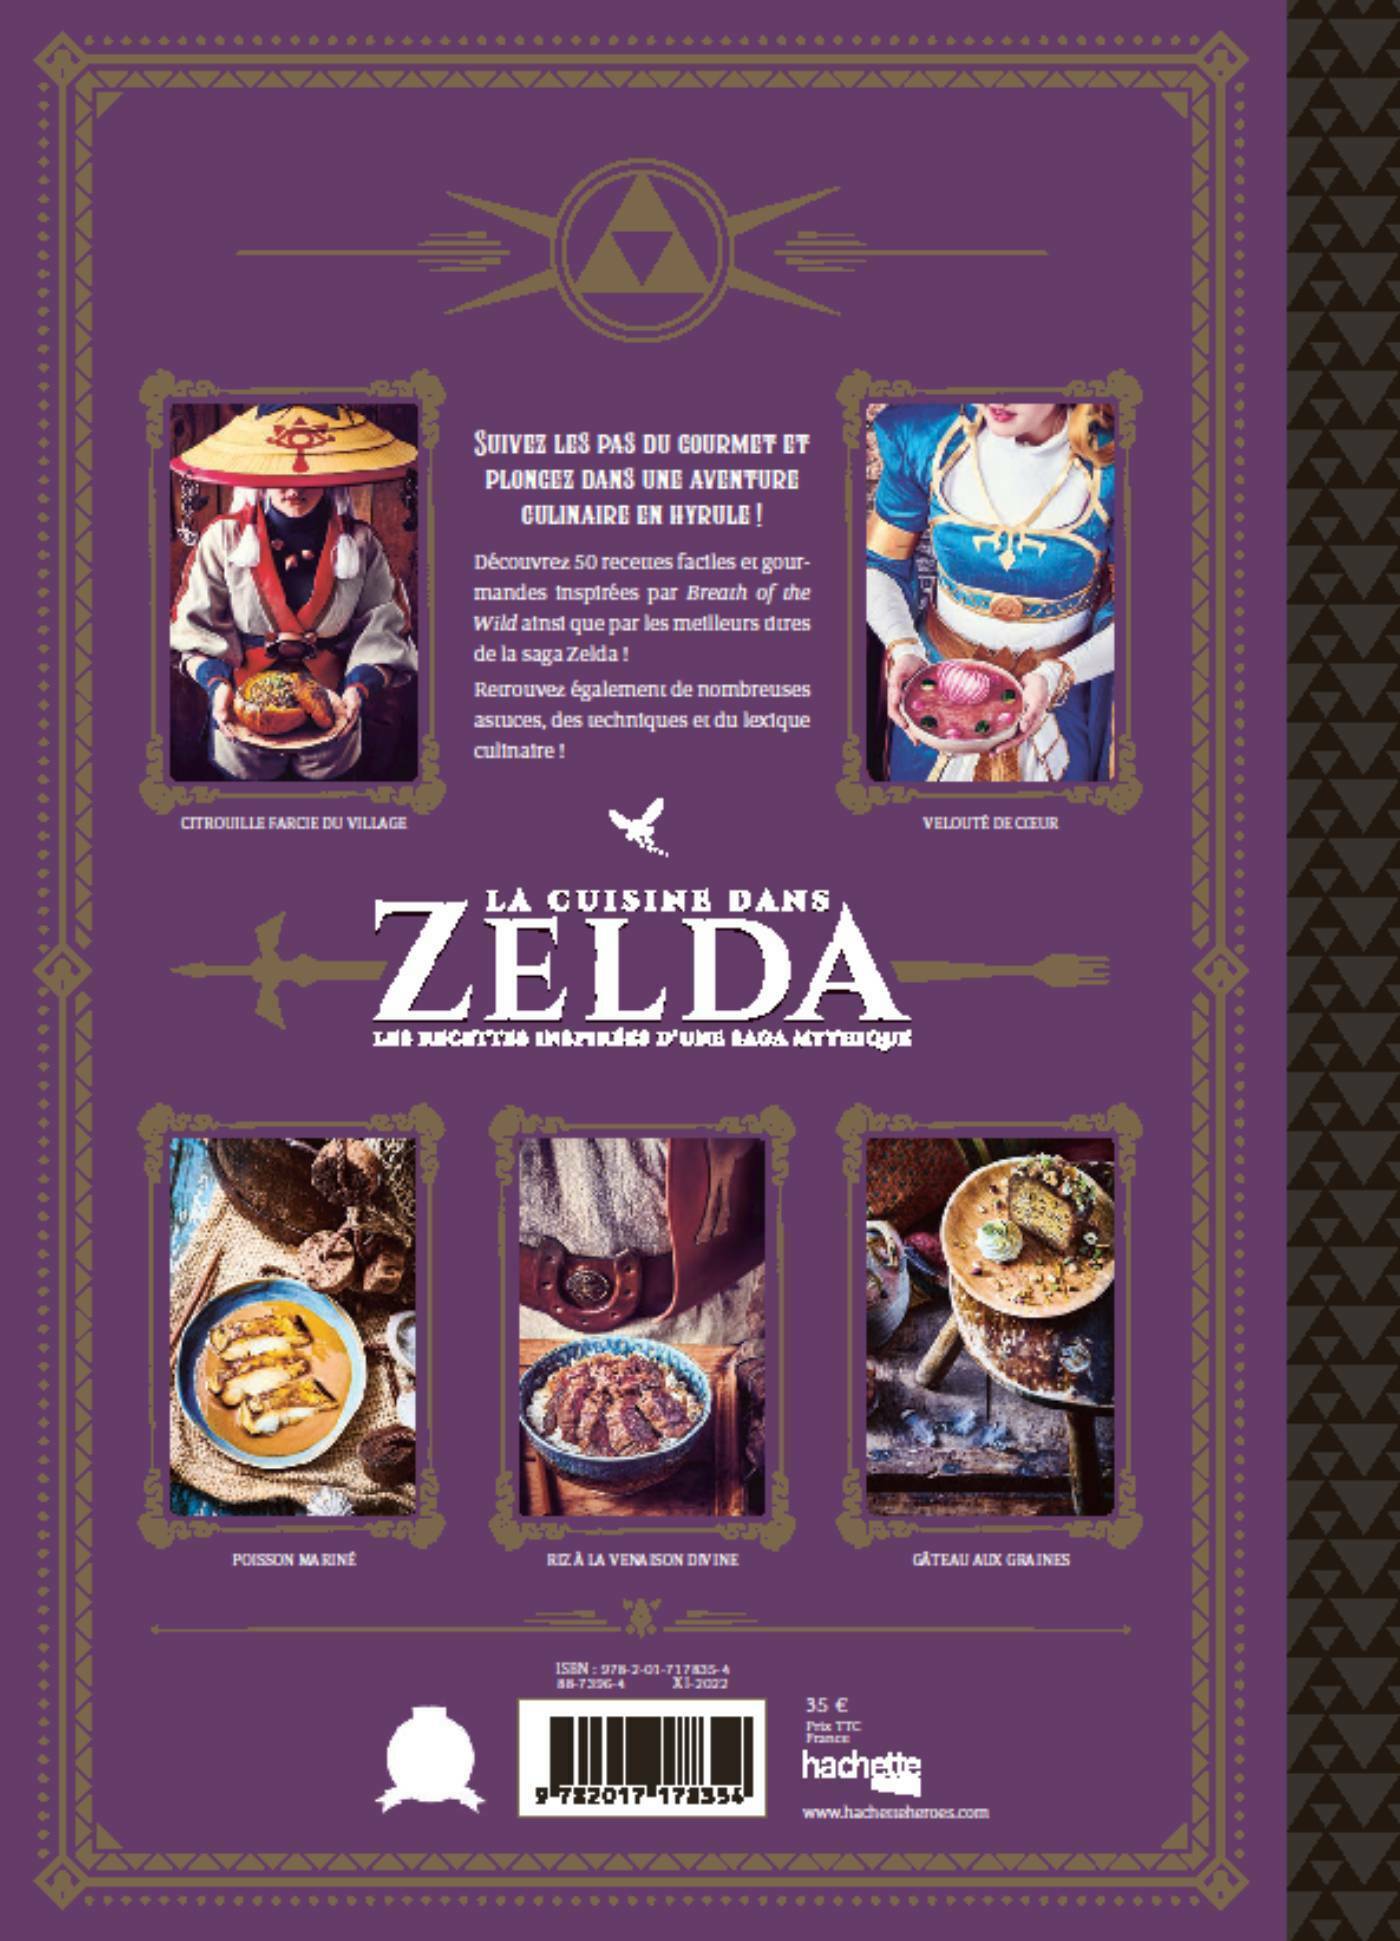 La cuisine dans Zelda - Les recettes inspirées d'une saga mythique